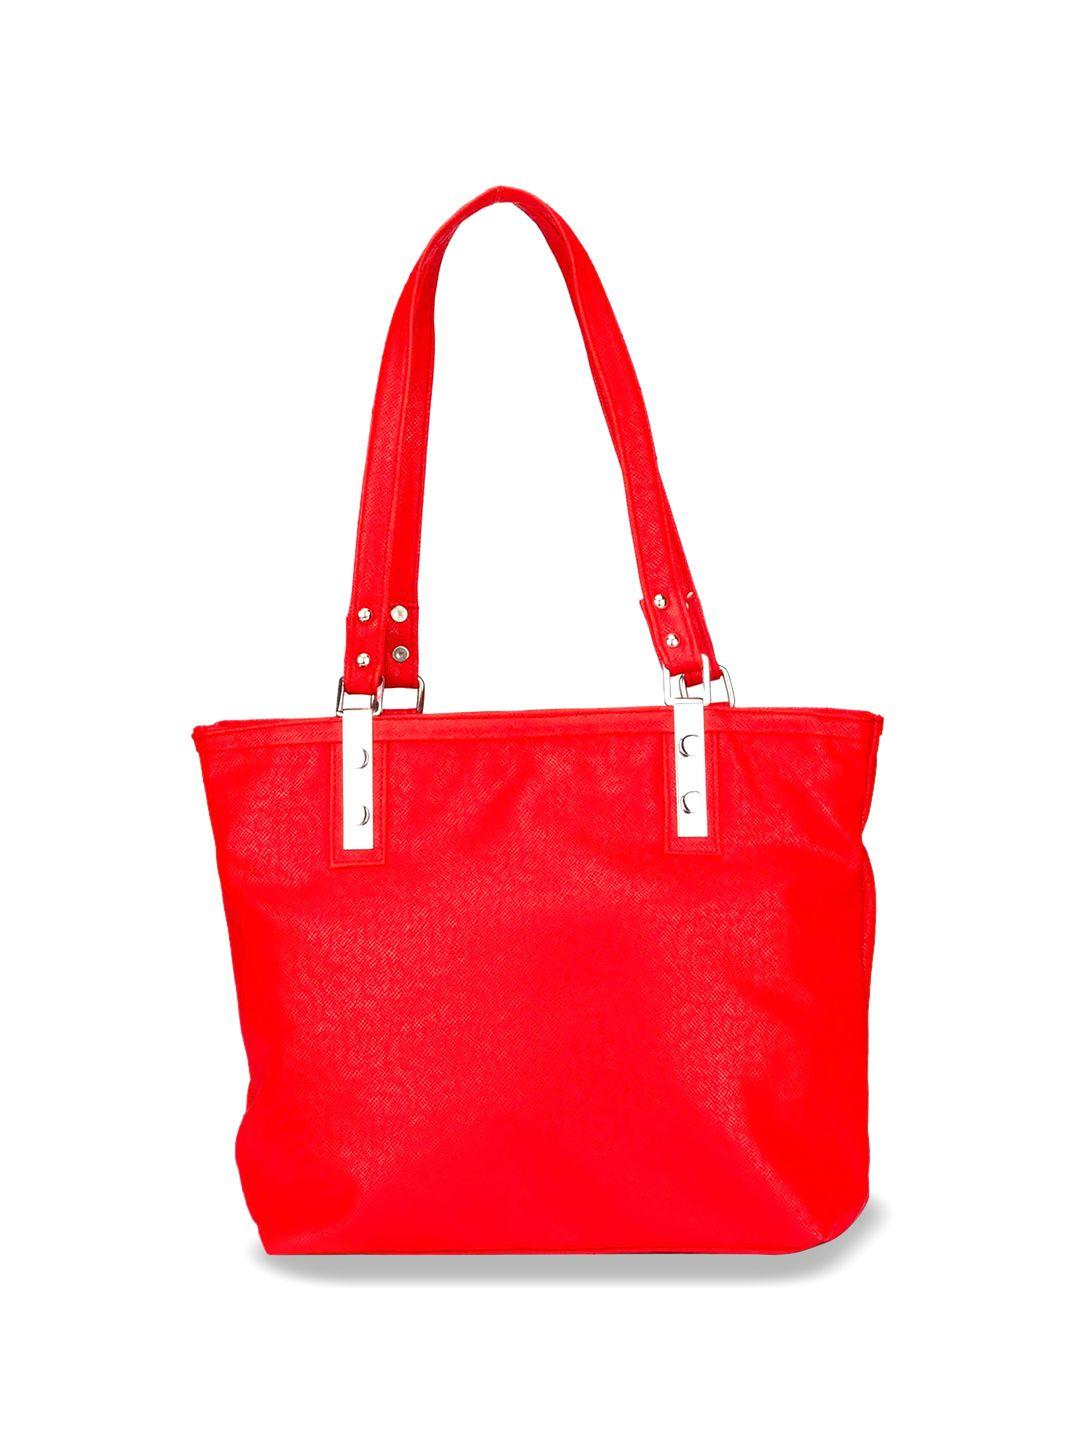 mast & harbour red structured shoulder bag